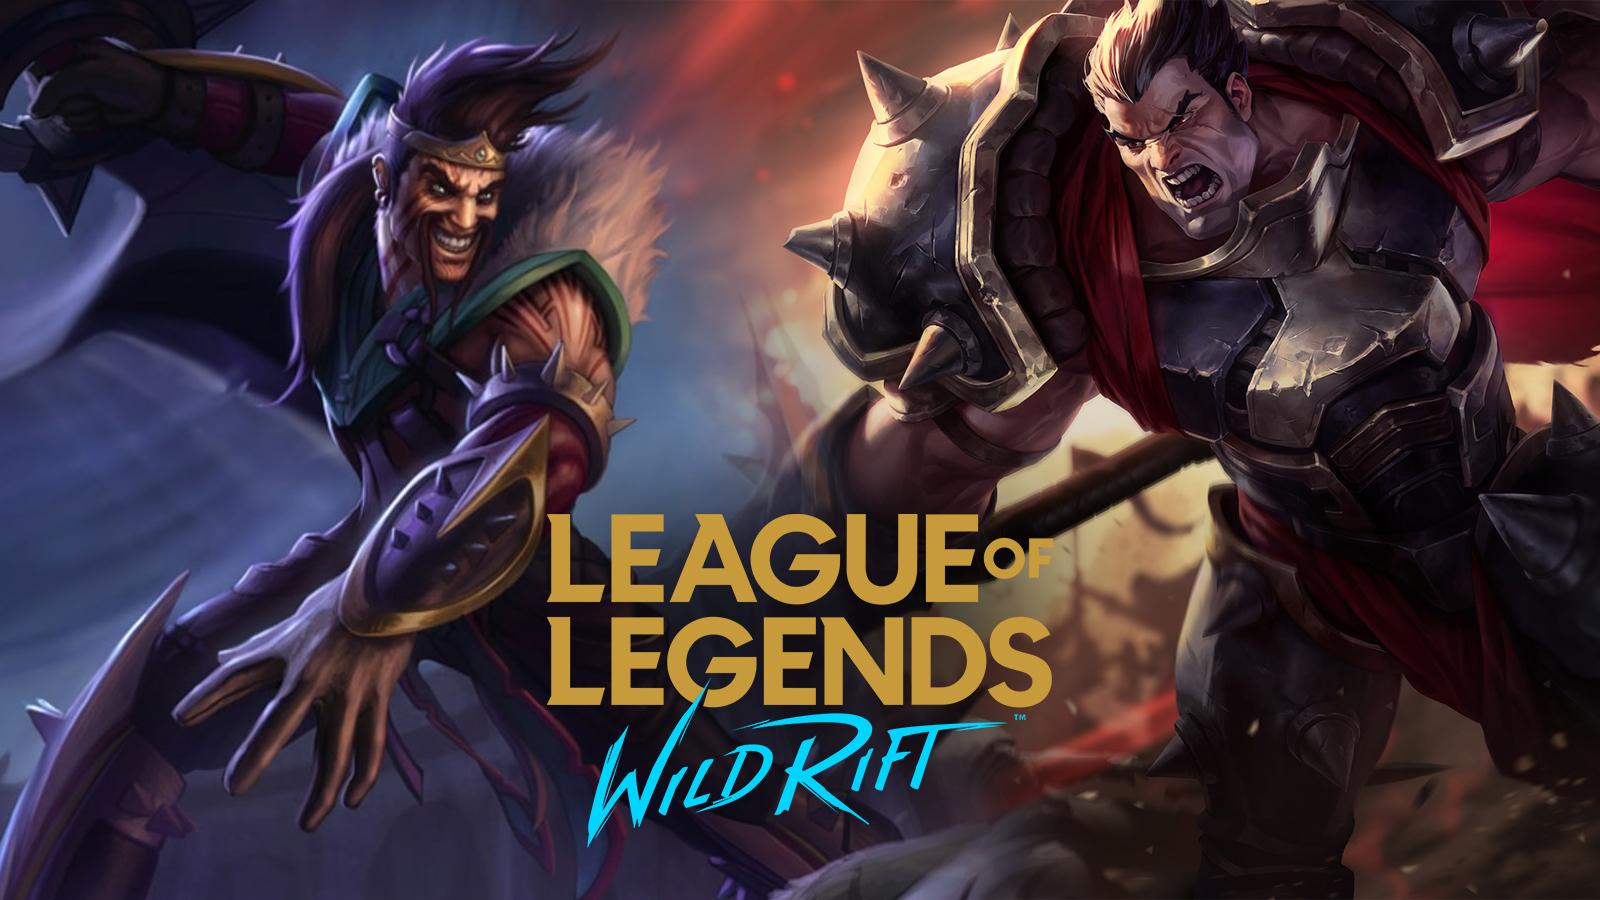 Video Game League of Legends: Wild Rift HD Wallpaper